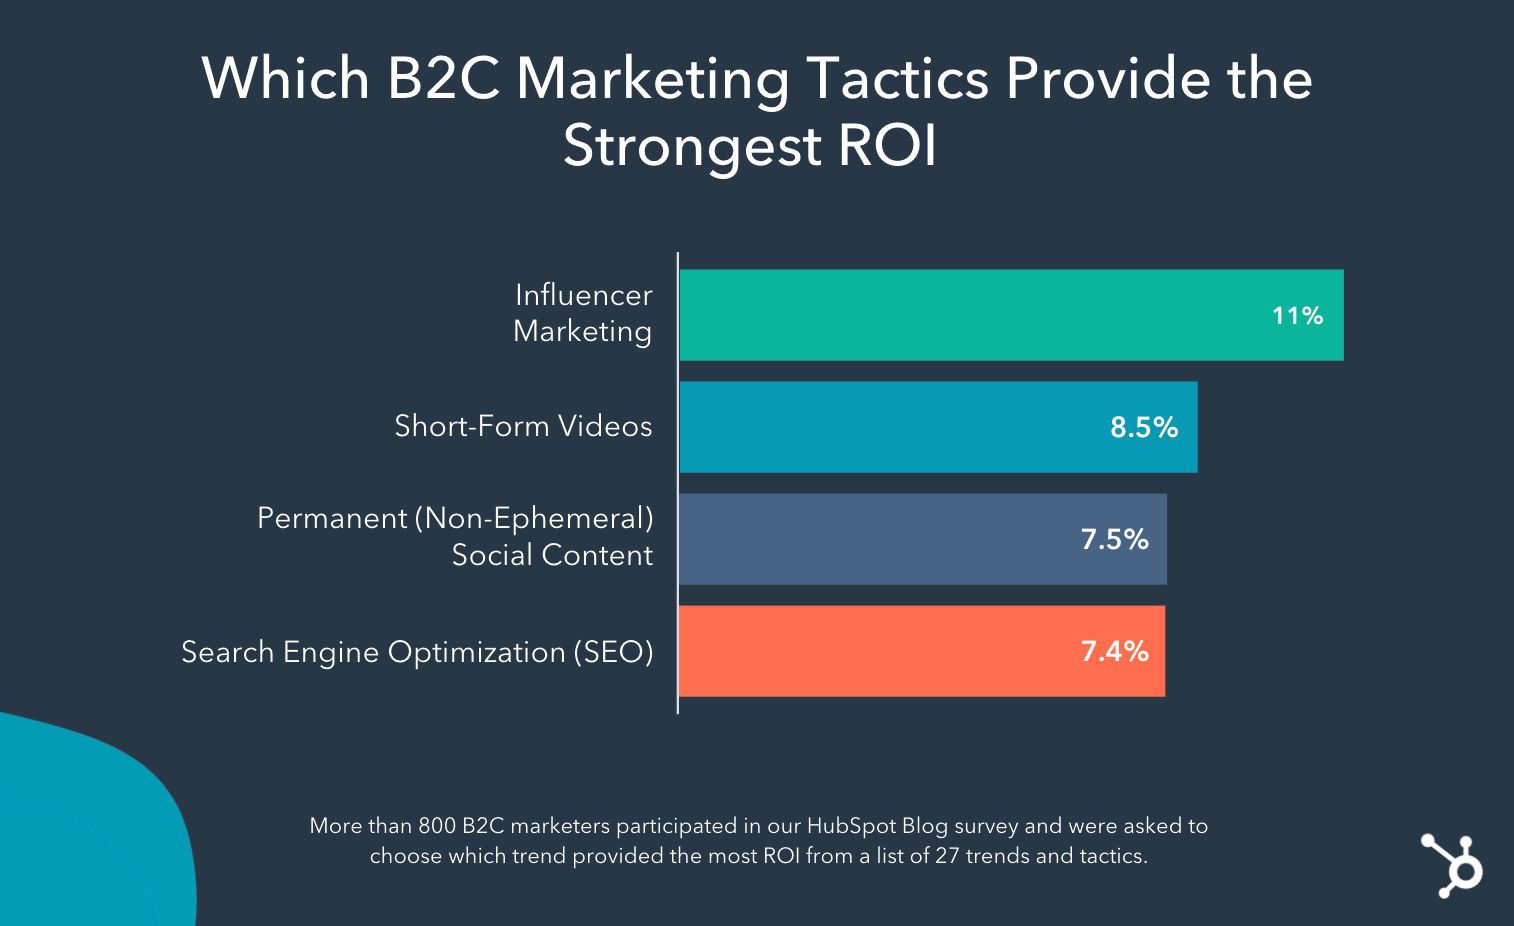 Un grafico mostra le tendenze e le tattiche B2C con il ROI più elevato che includono rispettivamente marketing di influencer, video in formato breve, contenuti social permanenti e SEO.